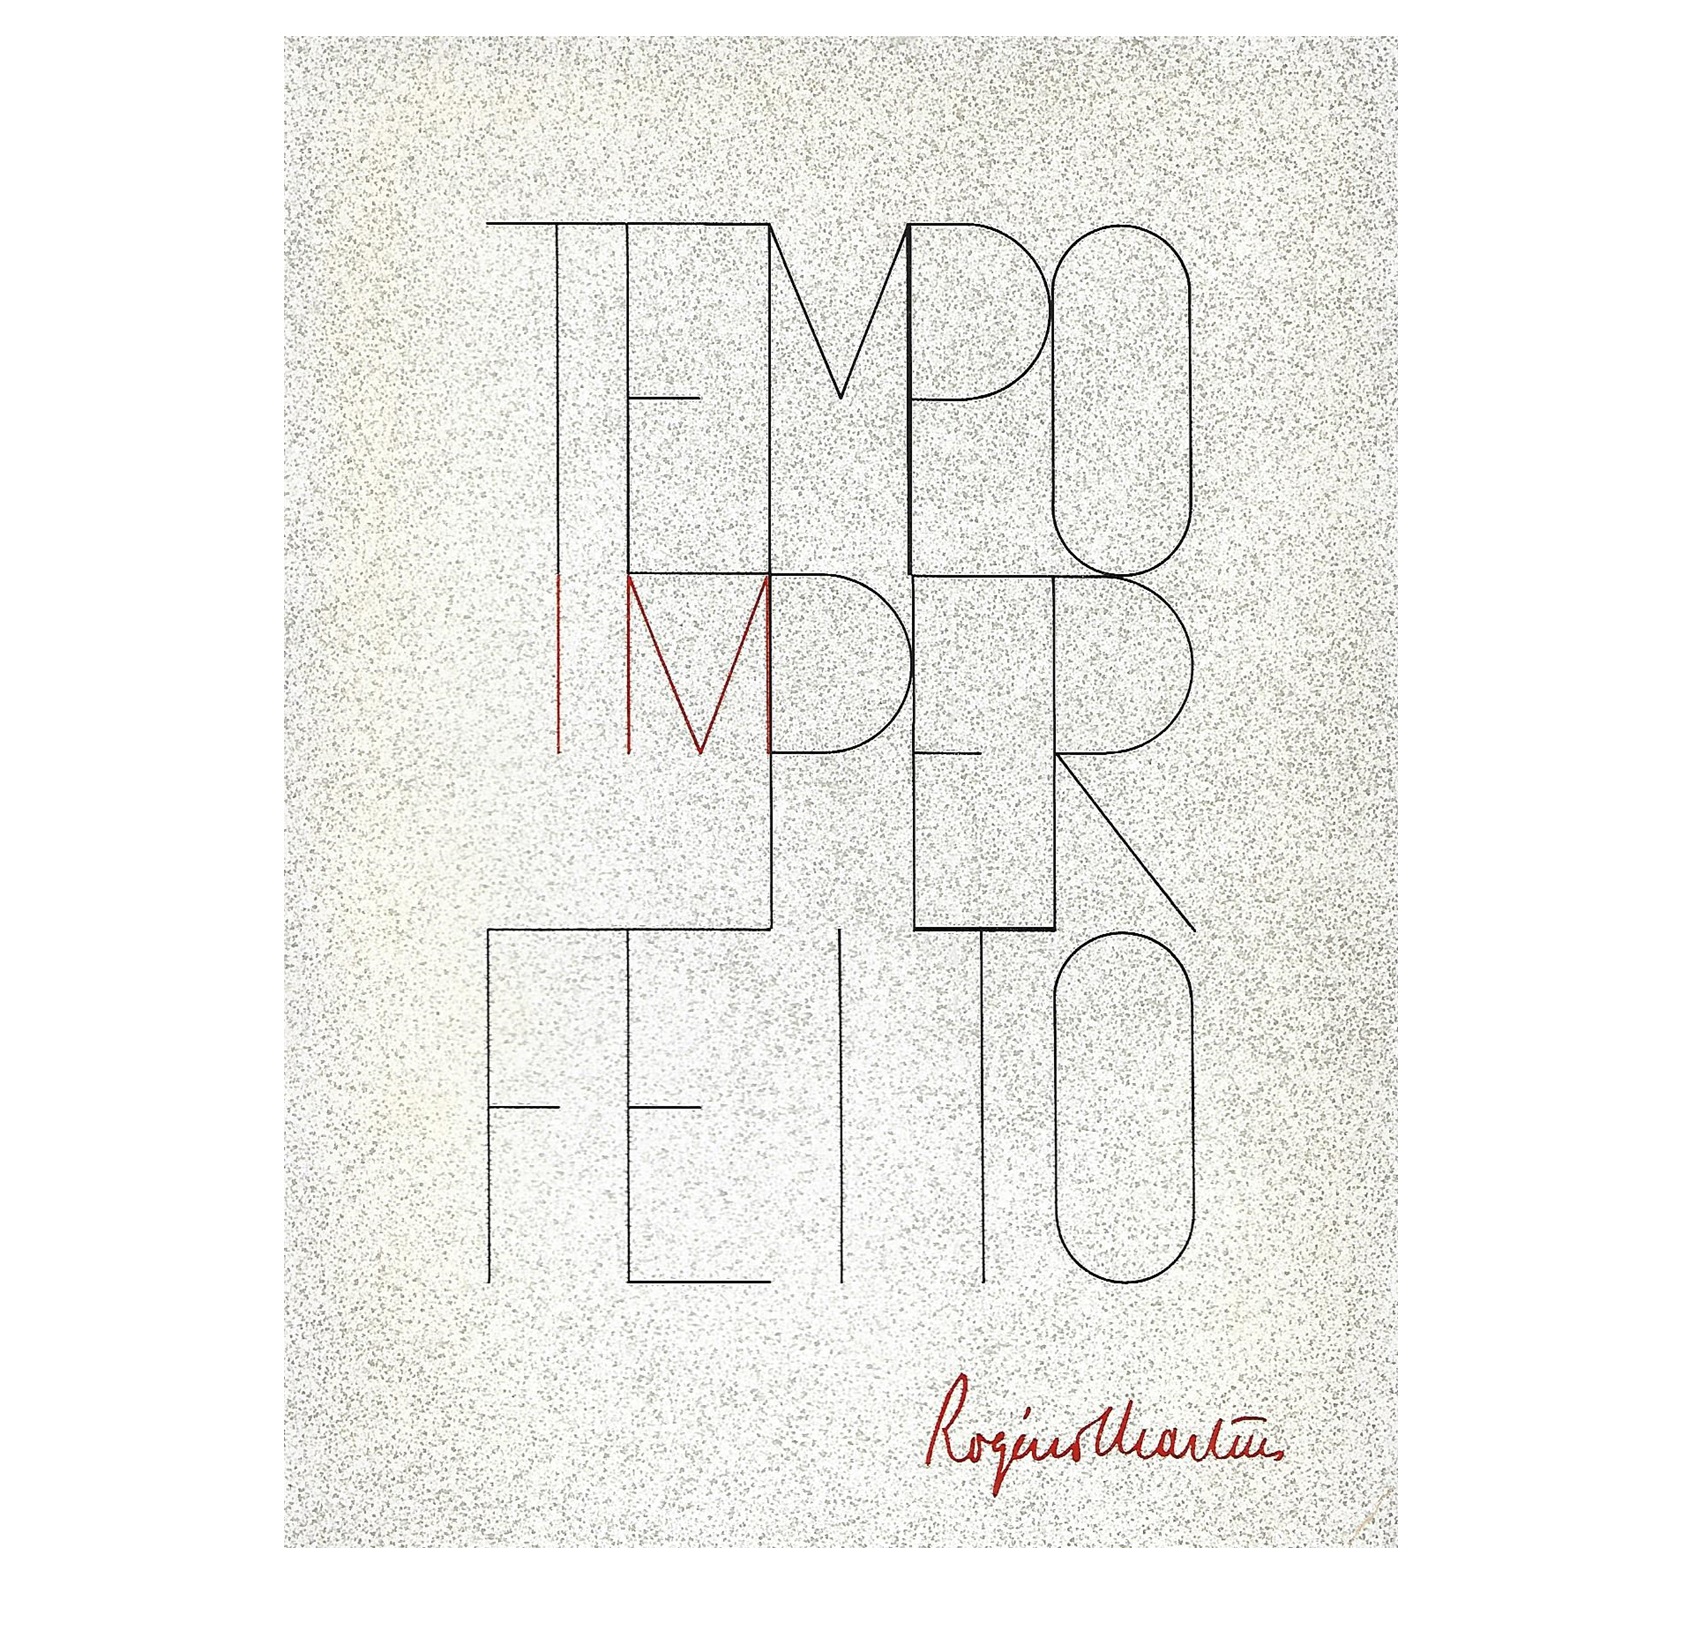 TEMPO IMPERFEITO [1970/72]